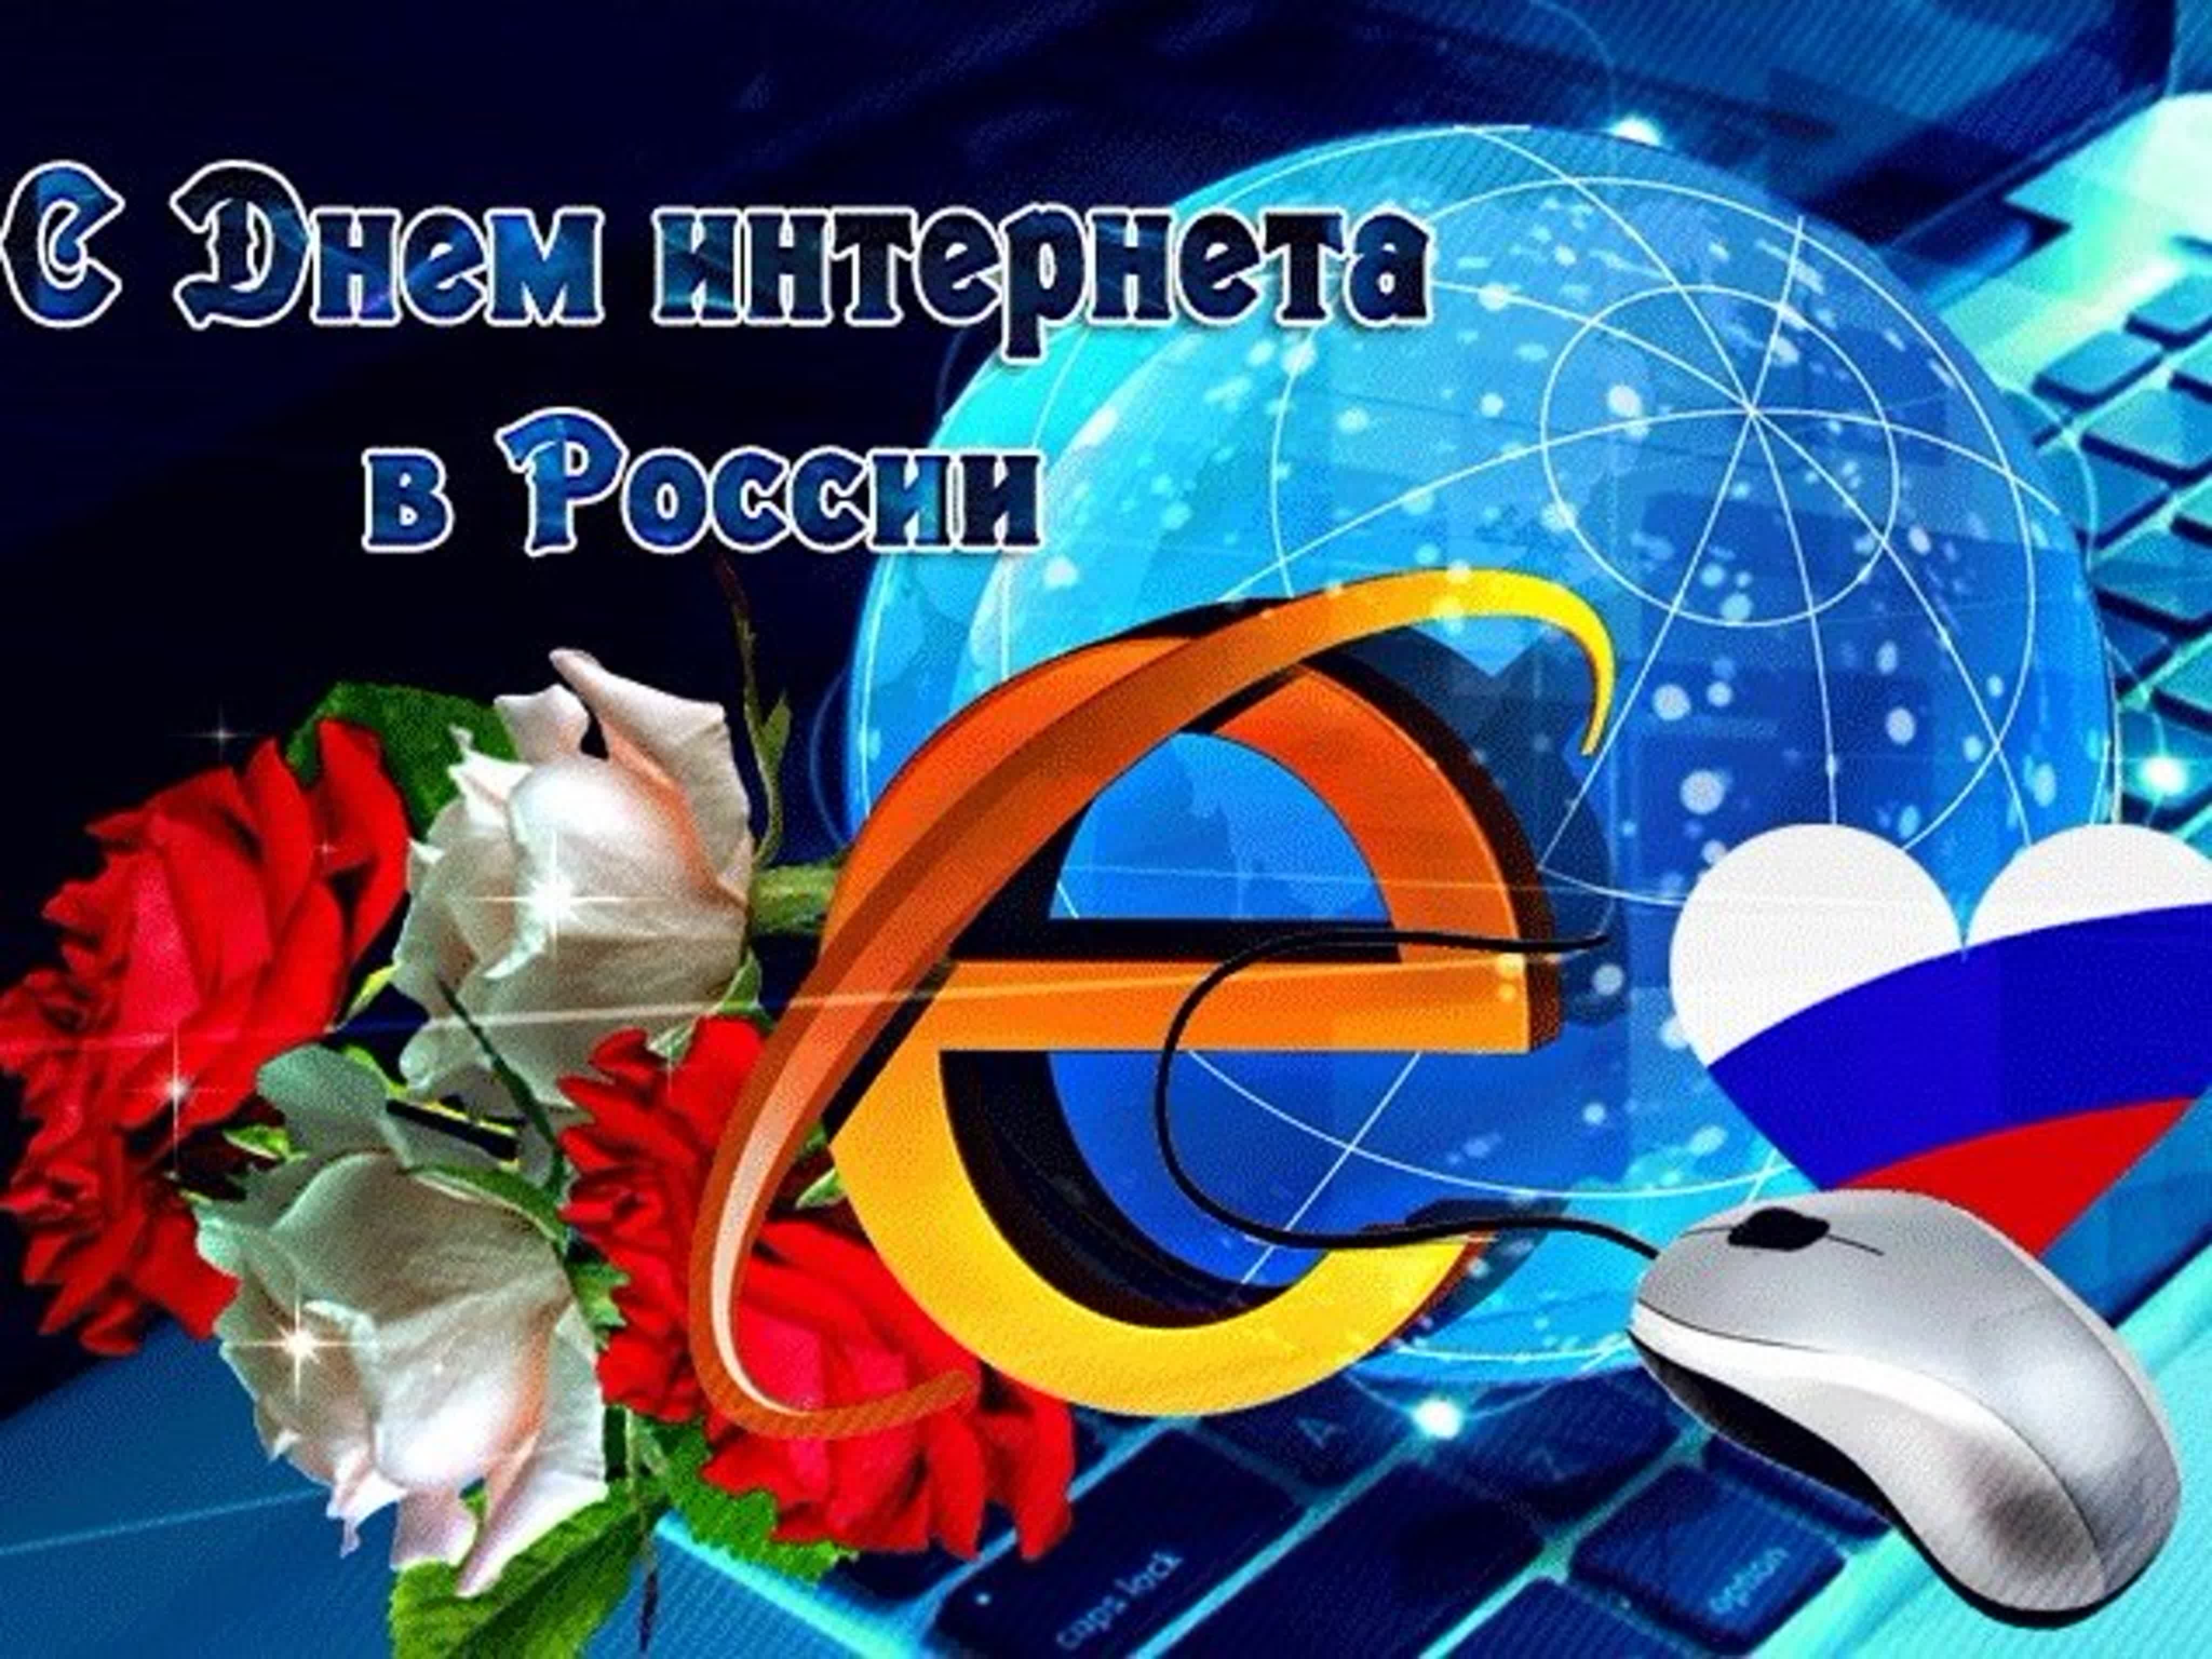 День интернета в России